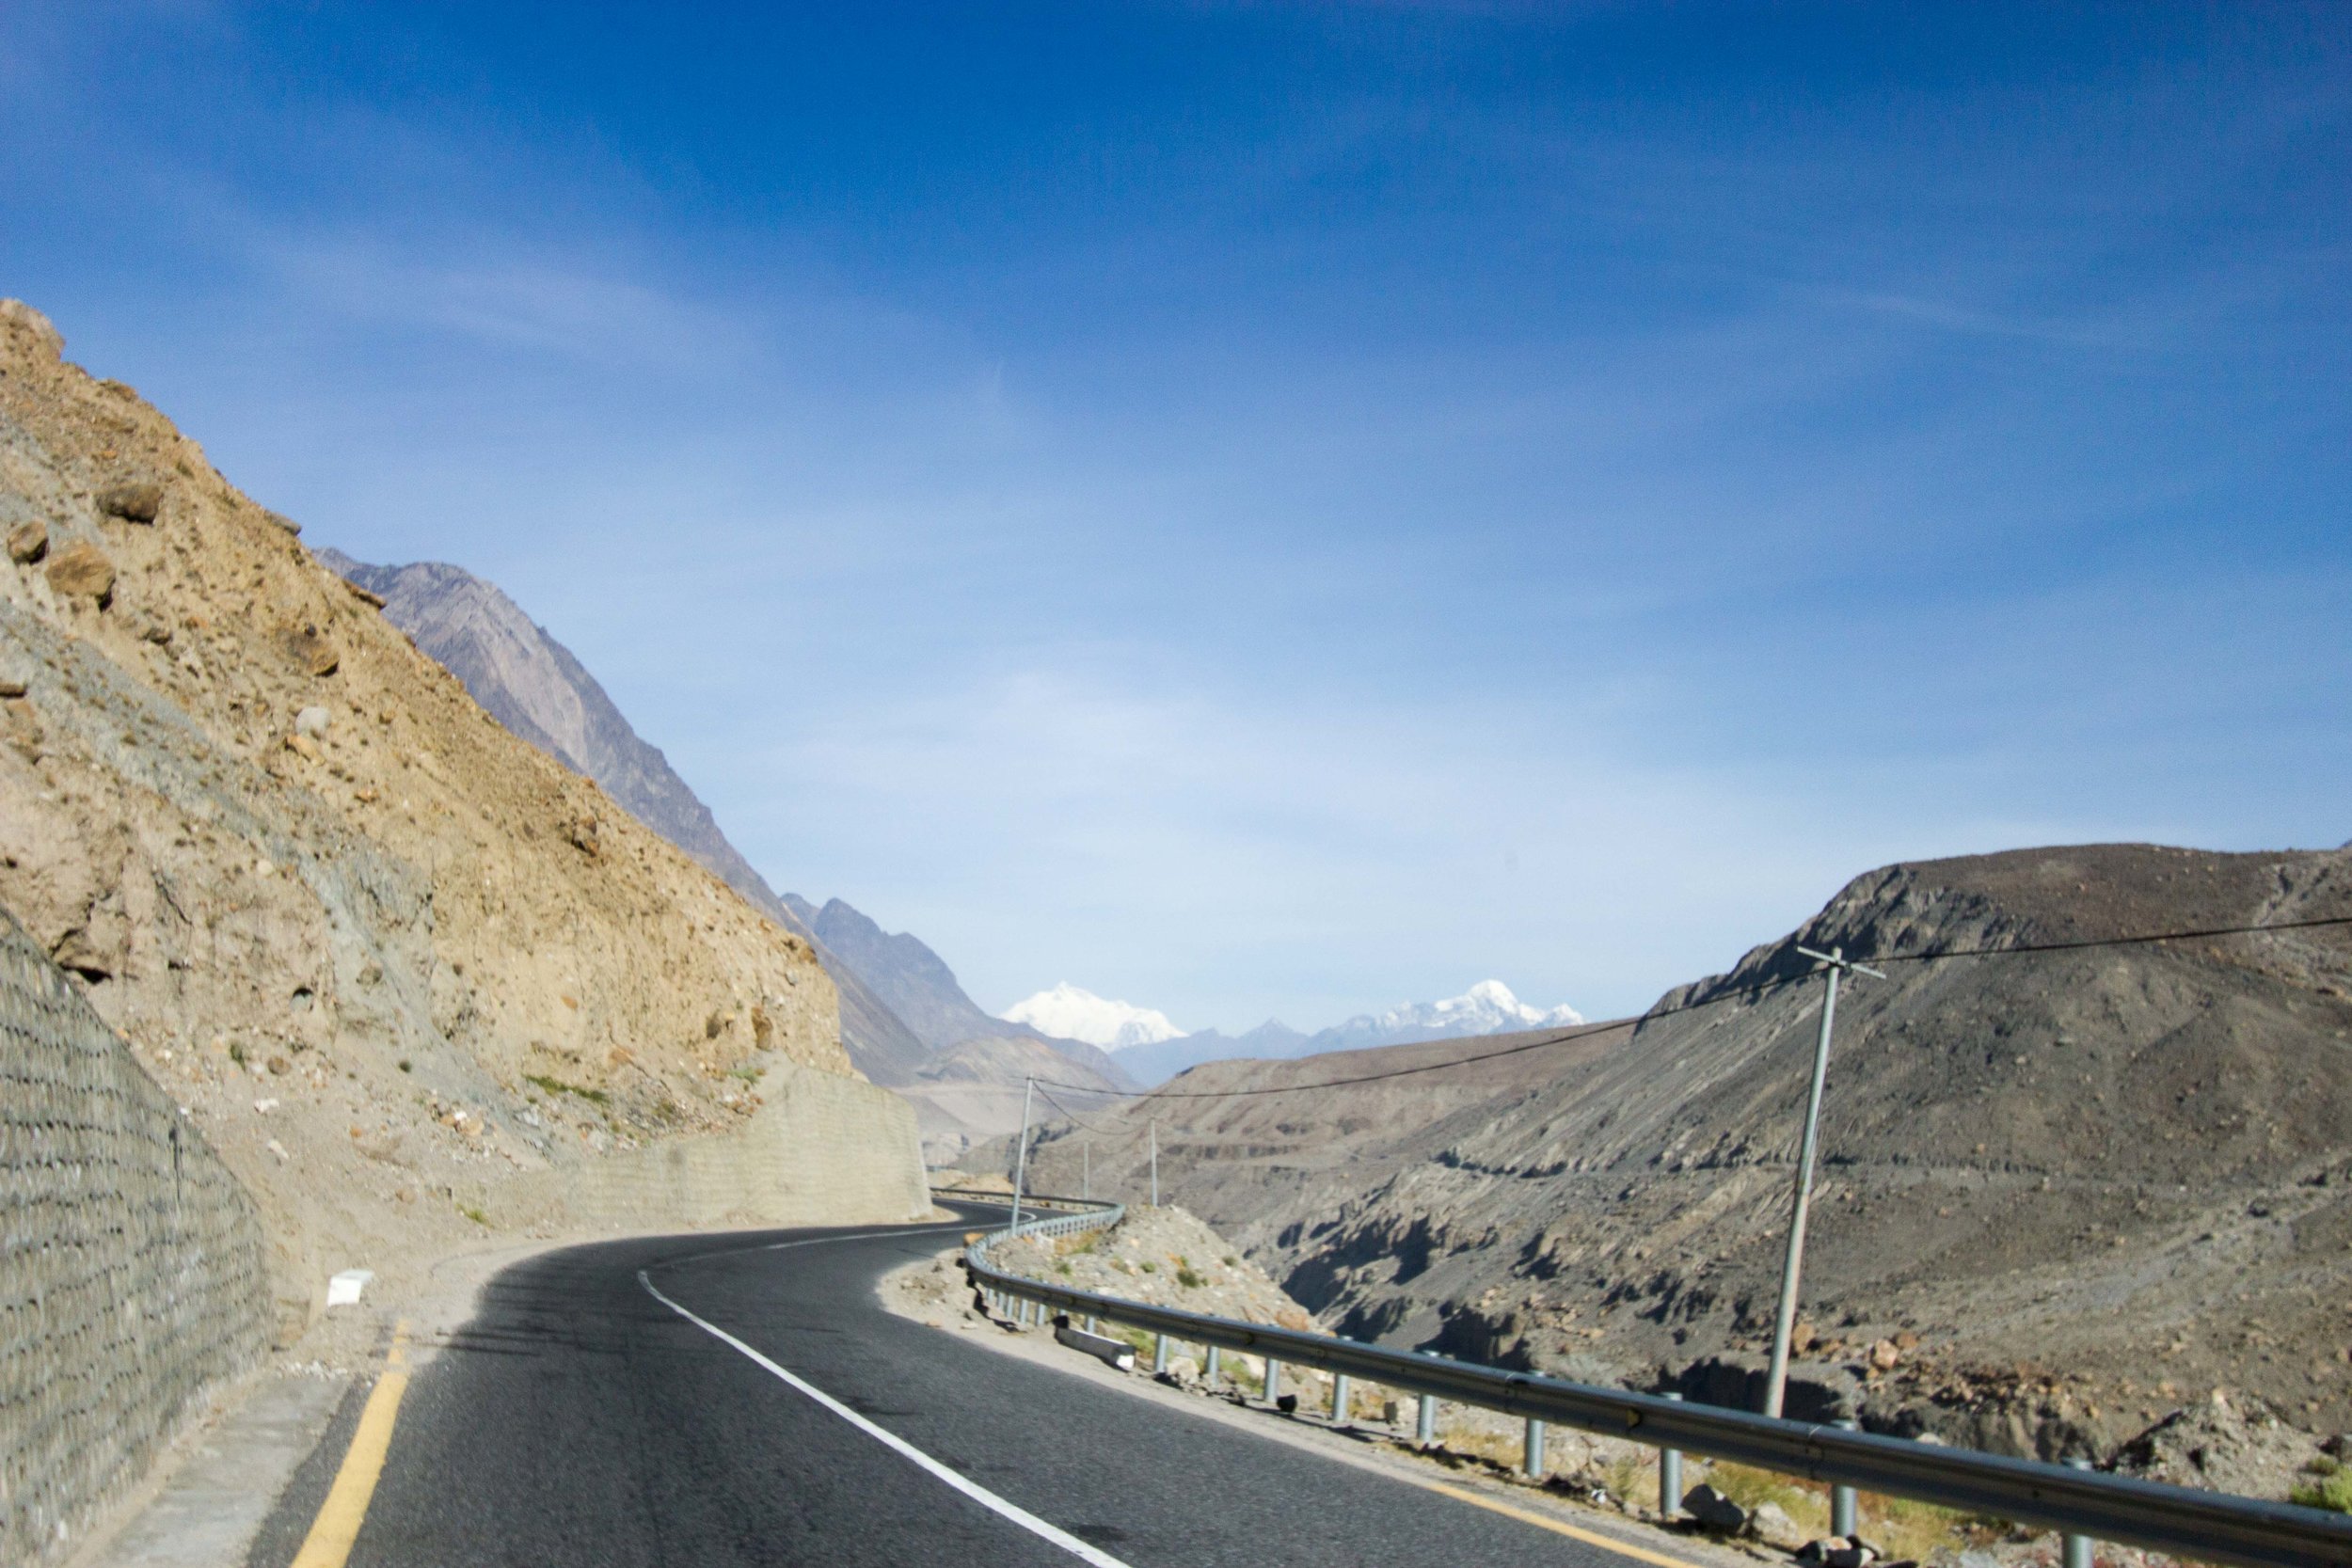  Cao tốc Karakoram, đoạn đường đẹp từ Karimabad đi Passu 